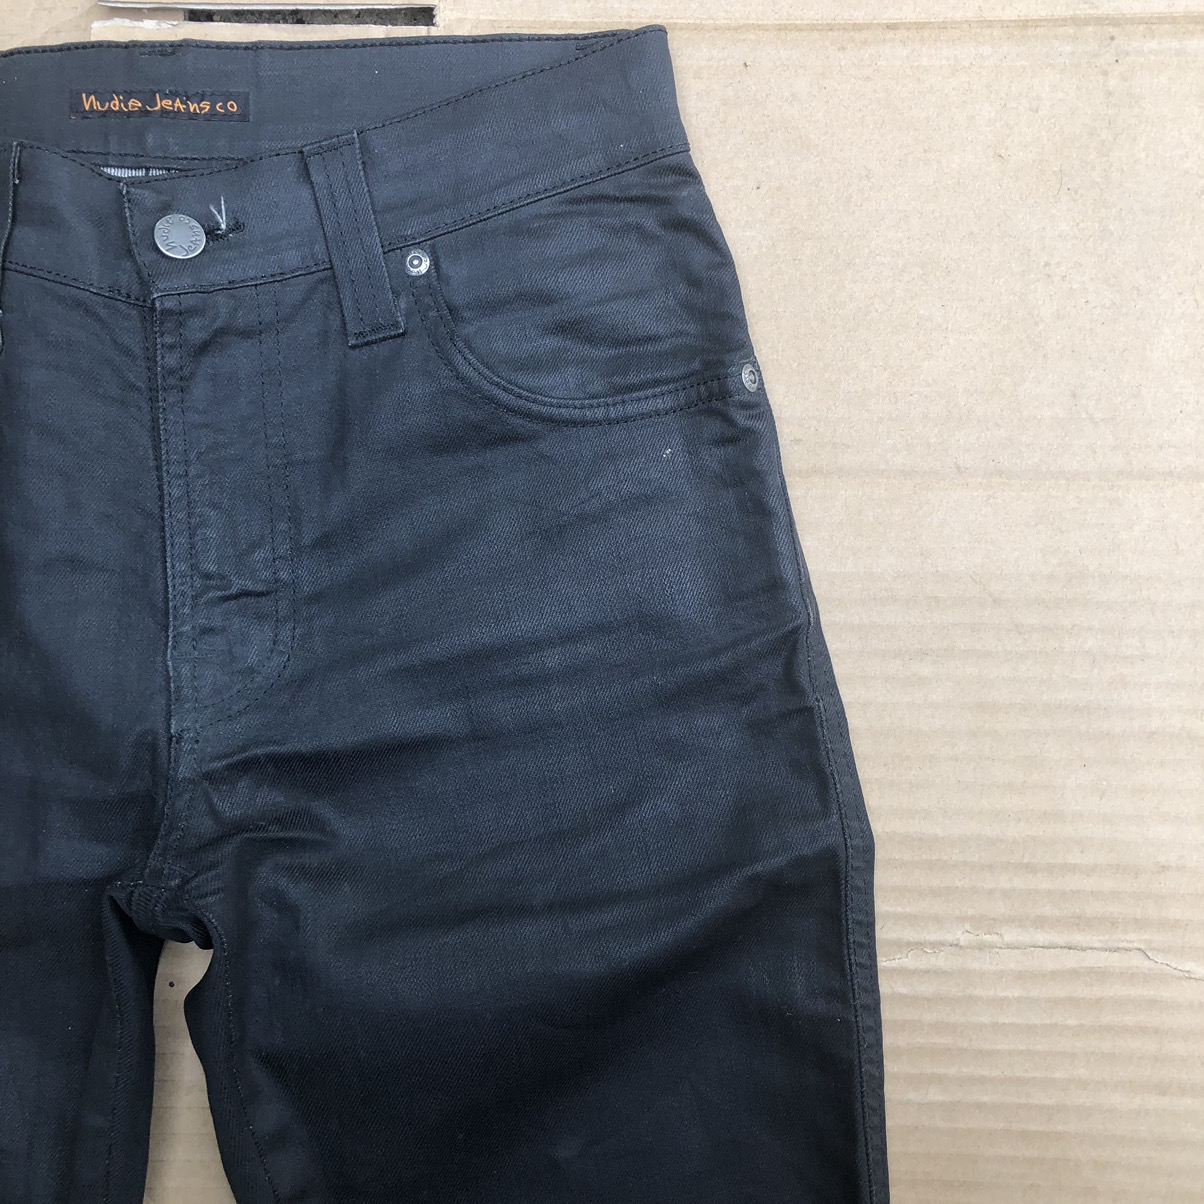 Nudie jeans slim Jim dry black coated Travis Scott - 3